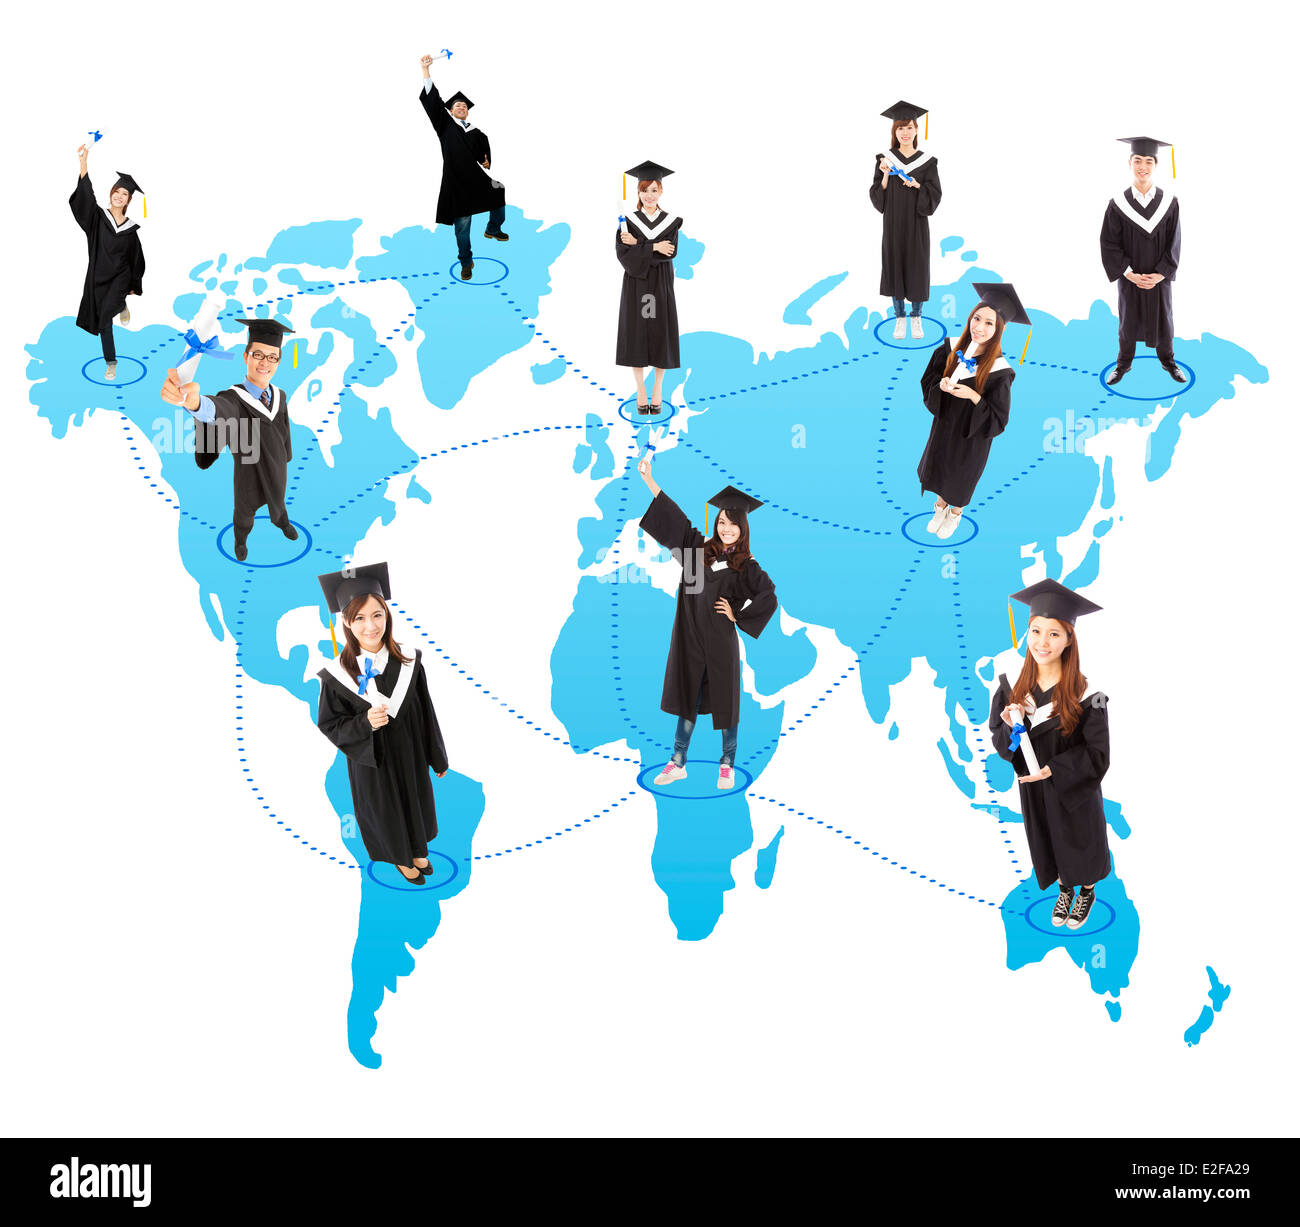 Réseau social étudiant diplôme mondial Banque D'Images